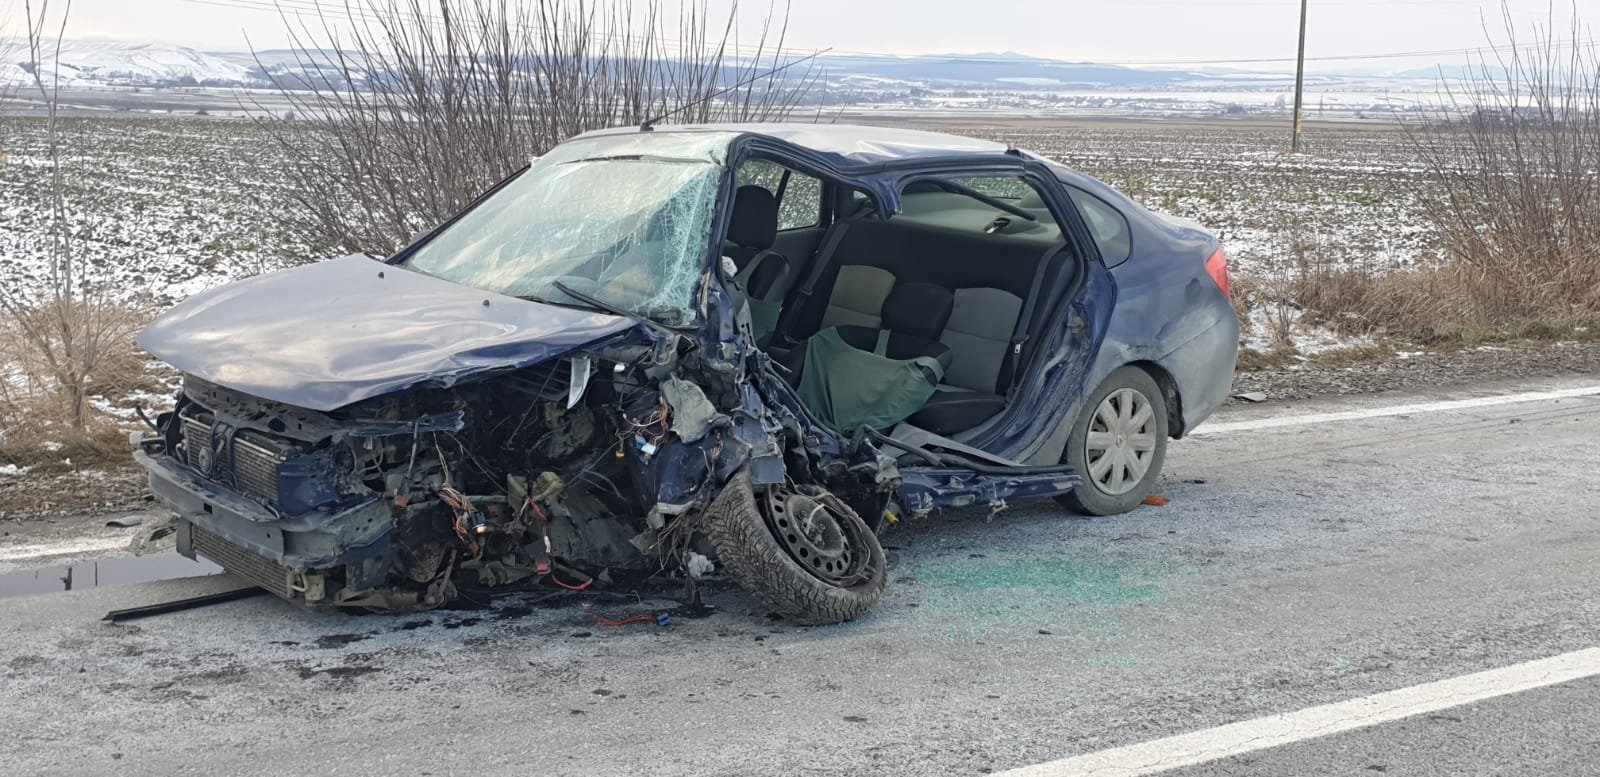  O familie de ucrainieni, accident în Neamţ. Femeia de la volan a fost rănită